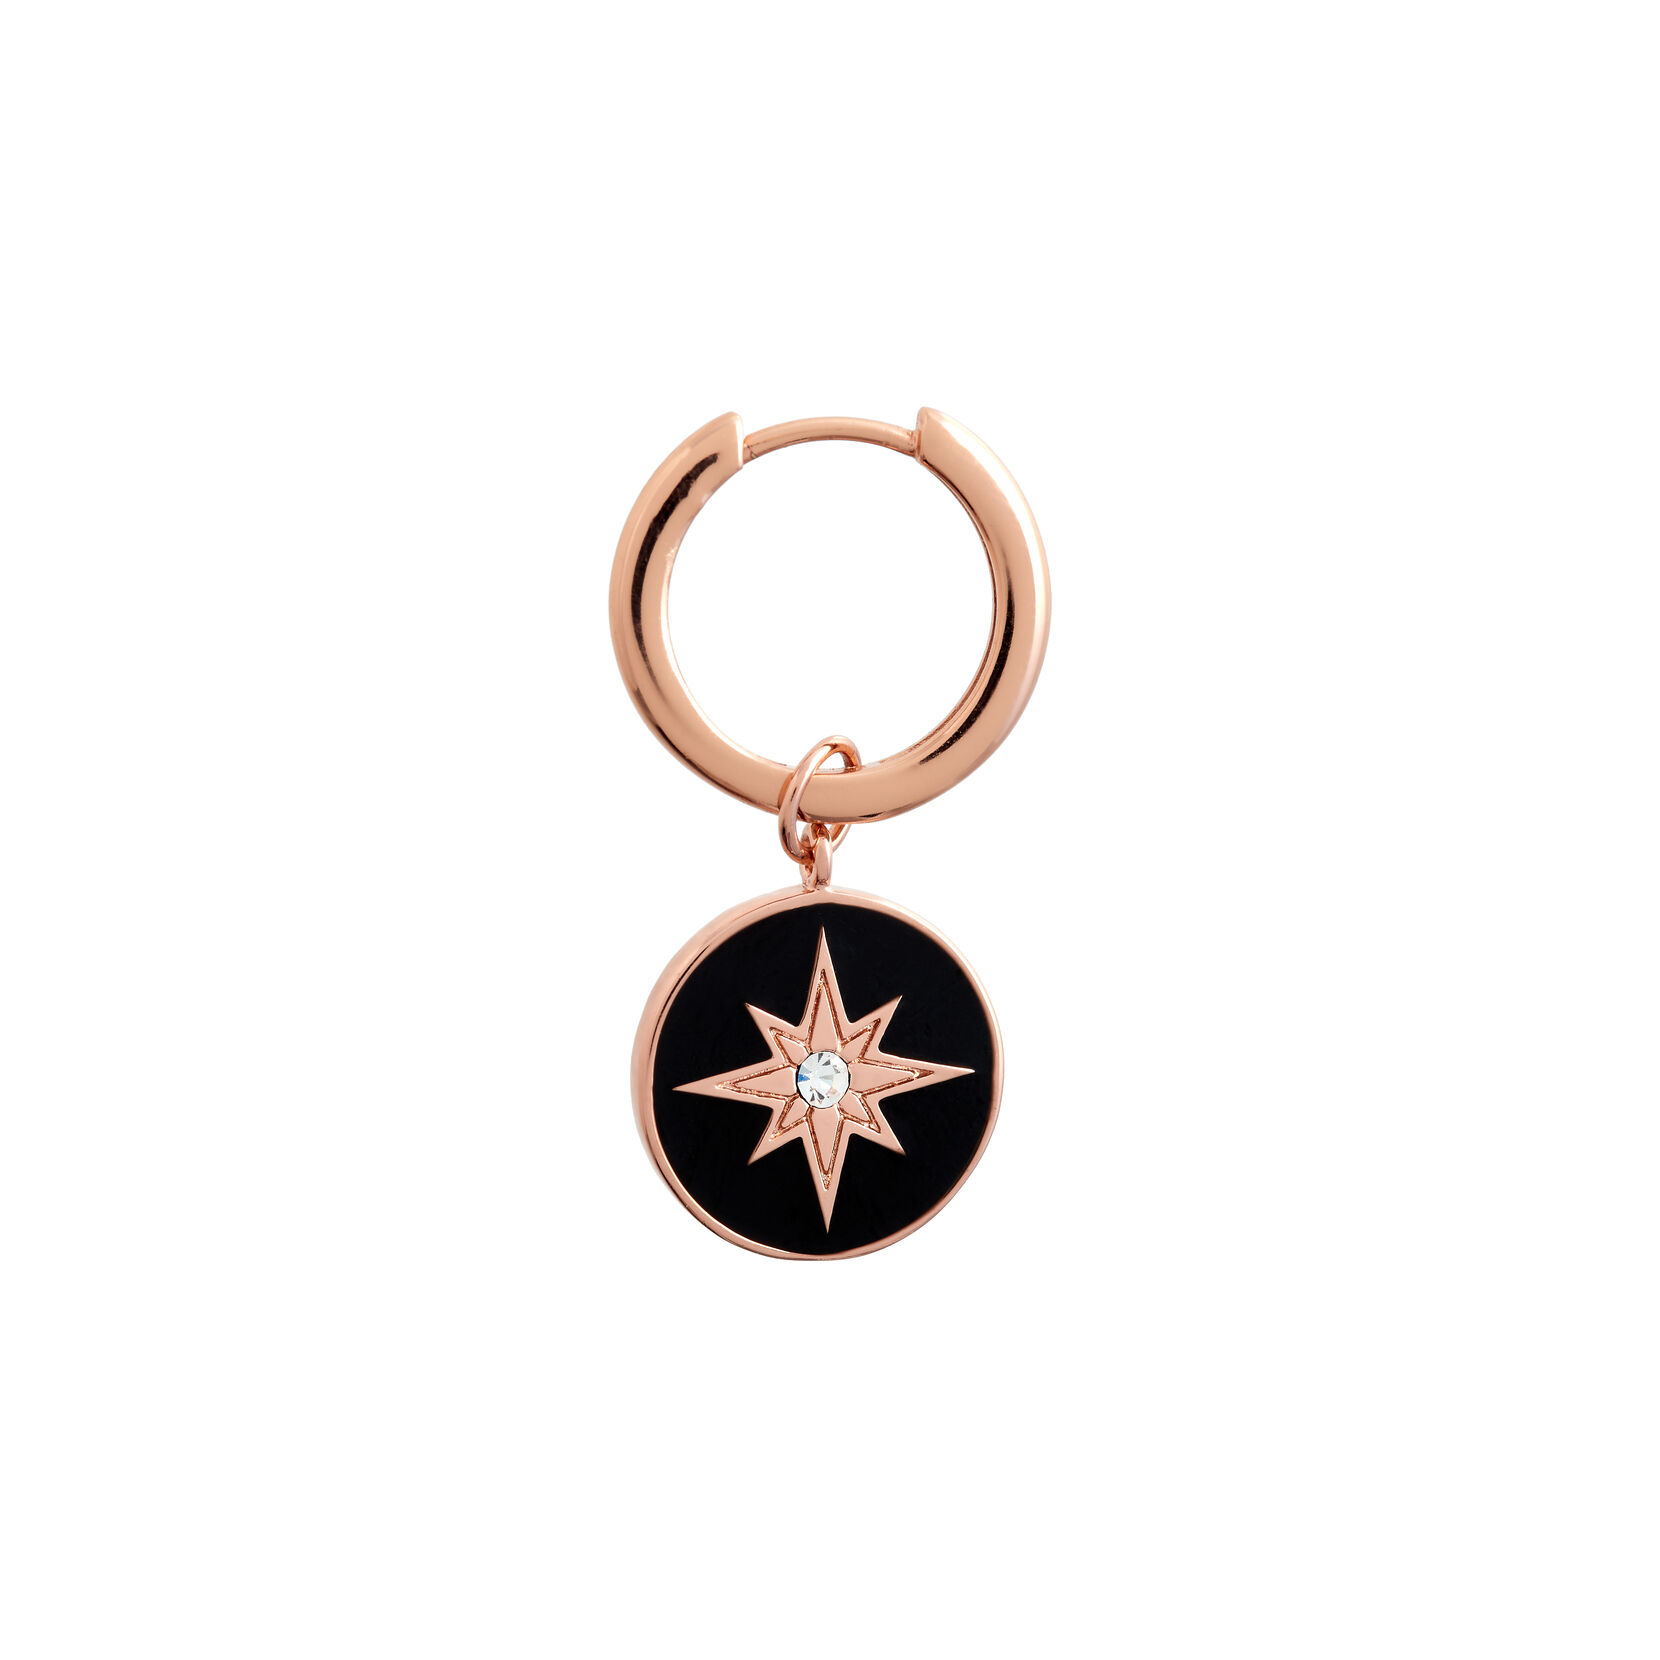 Celestial Rose Gold & Enamel Black North Star Earrings